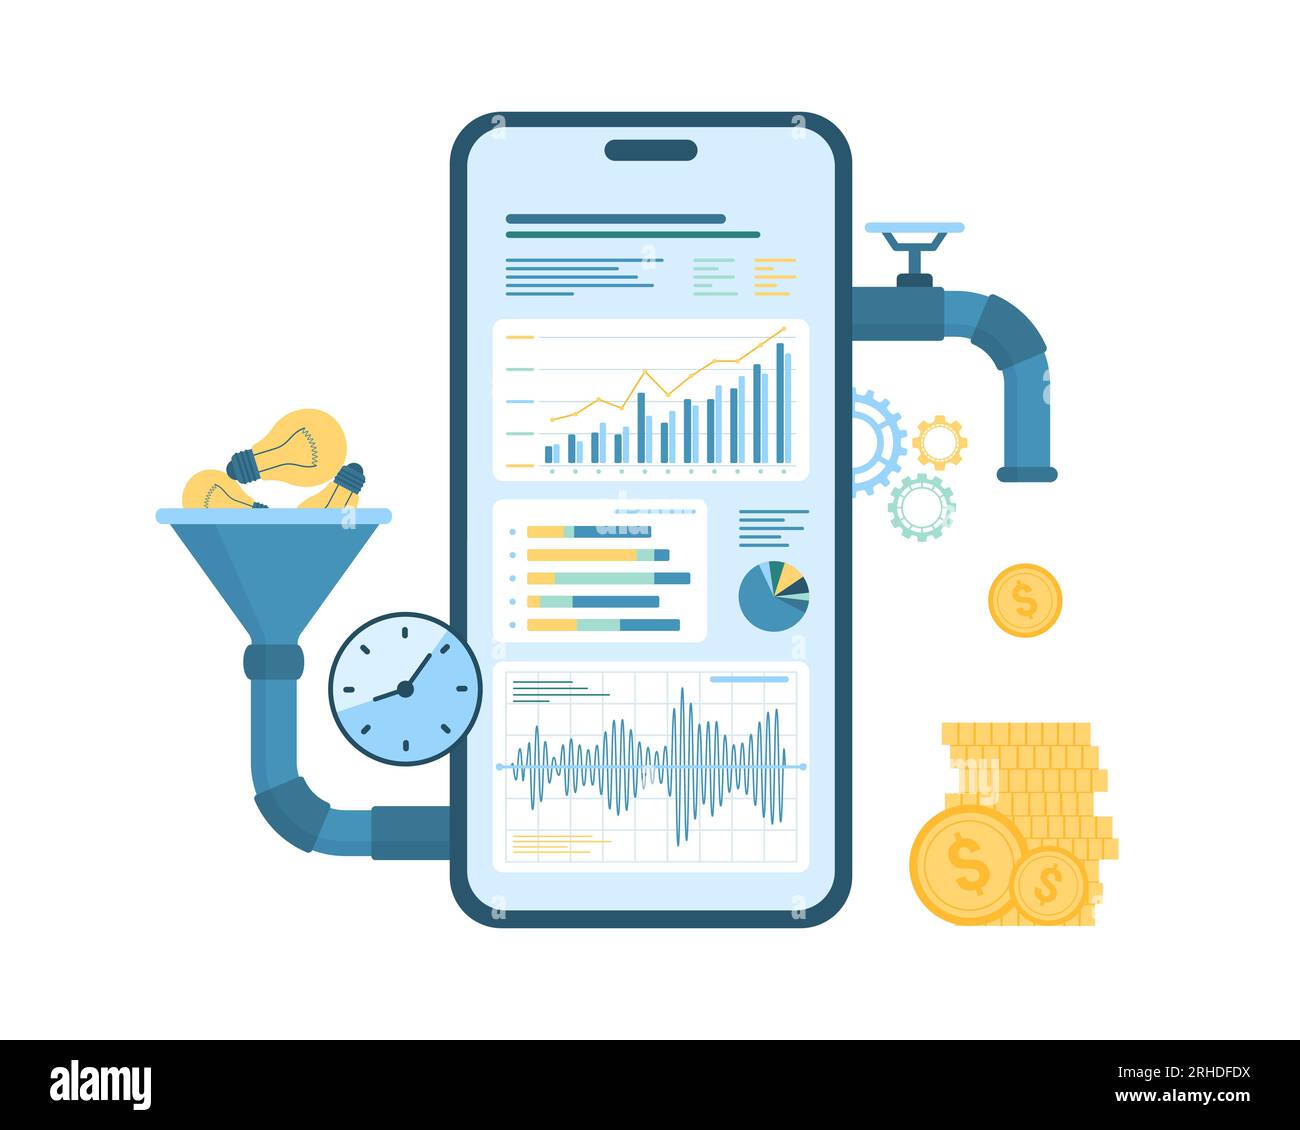 Converti le idee in denaro con l'app mobile nell'illustrazione vettoriale  per telefono. Smartphone isolato per cartoni animati con imbuto e tubi,  sistema di ricerca di marketing e analisi di report grafici di